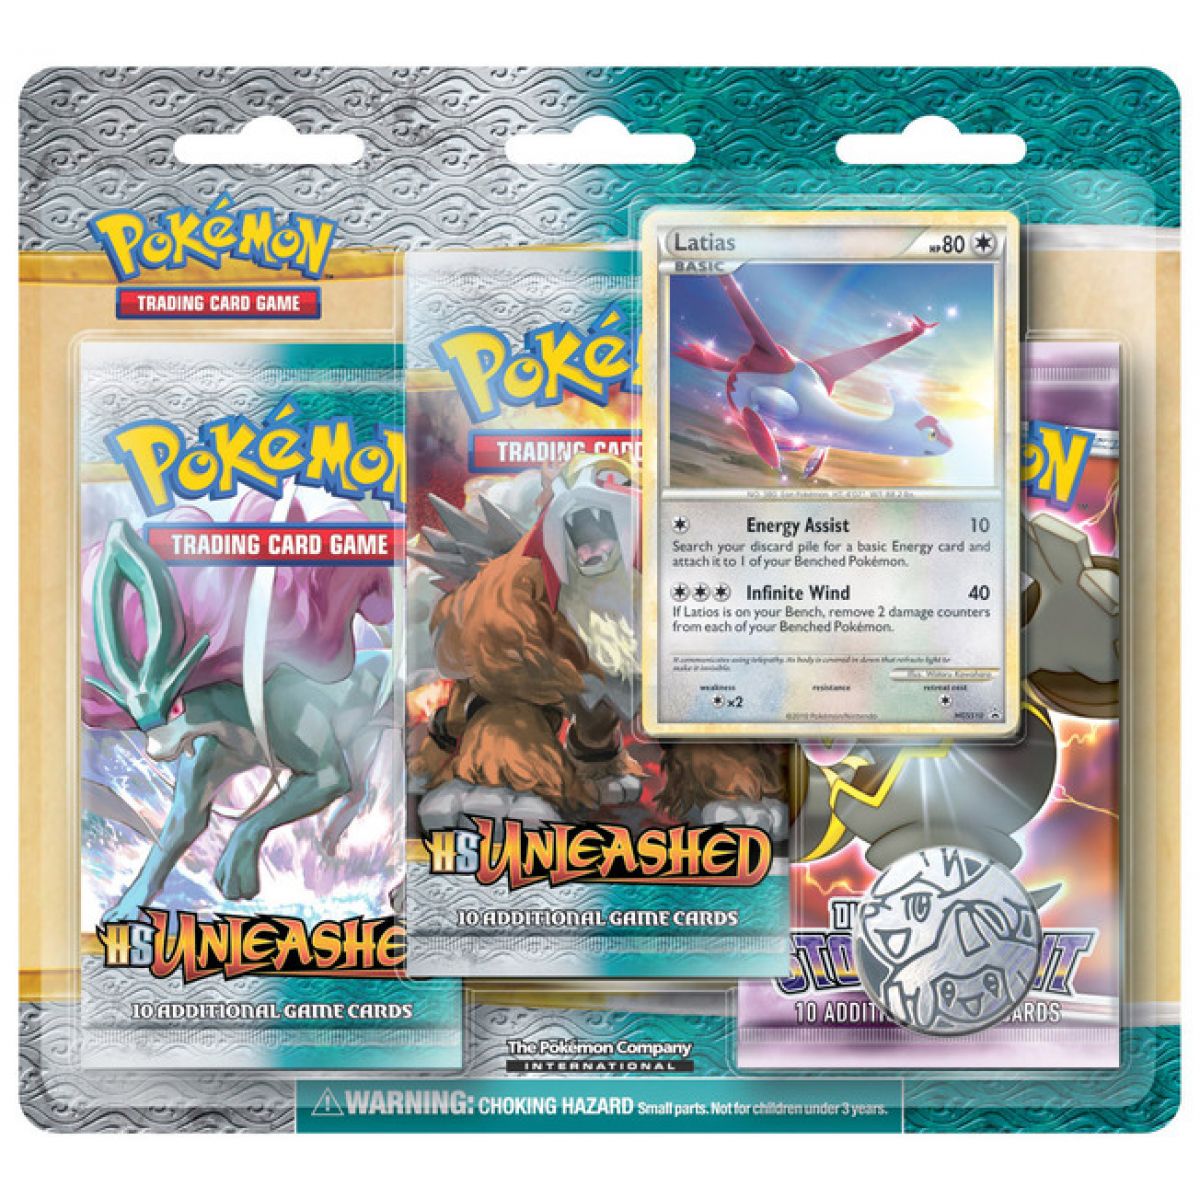 Pokémon HS Unleashed 3 Pack